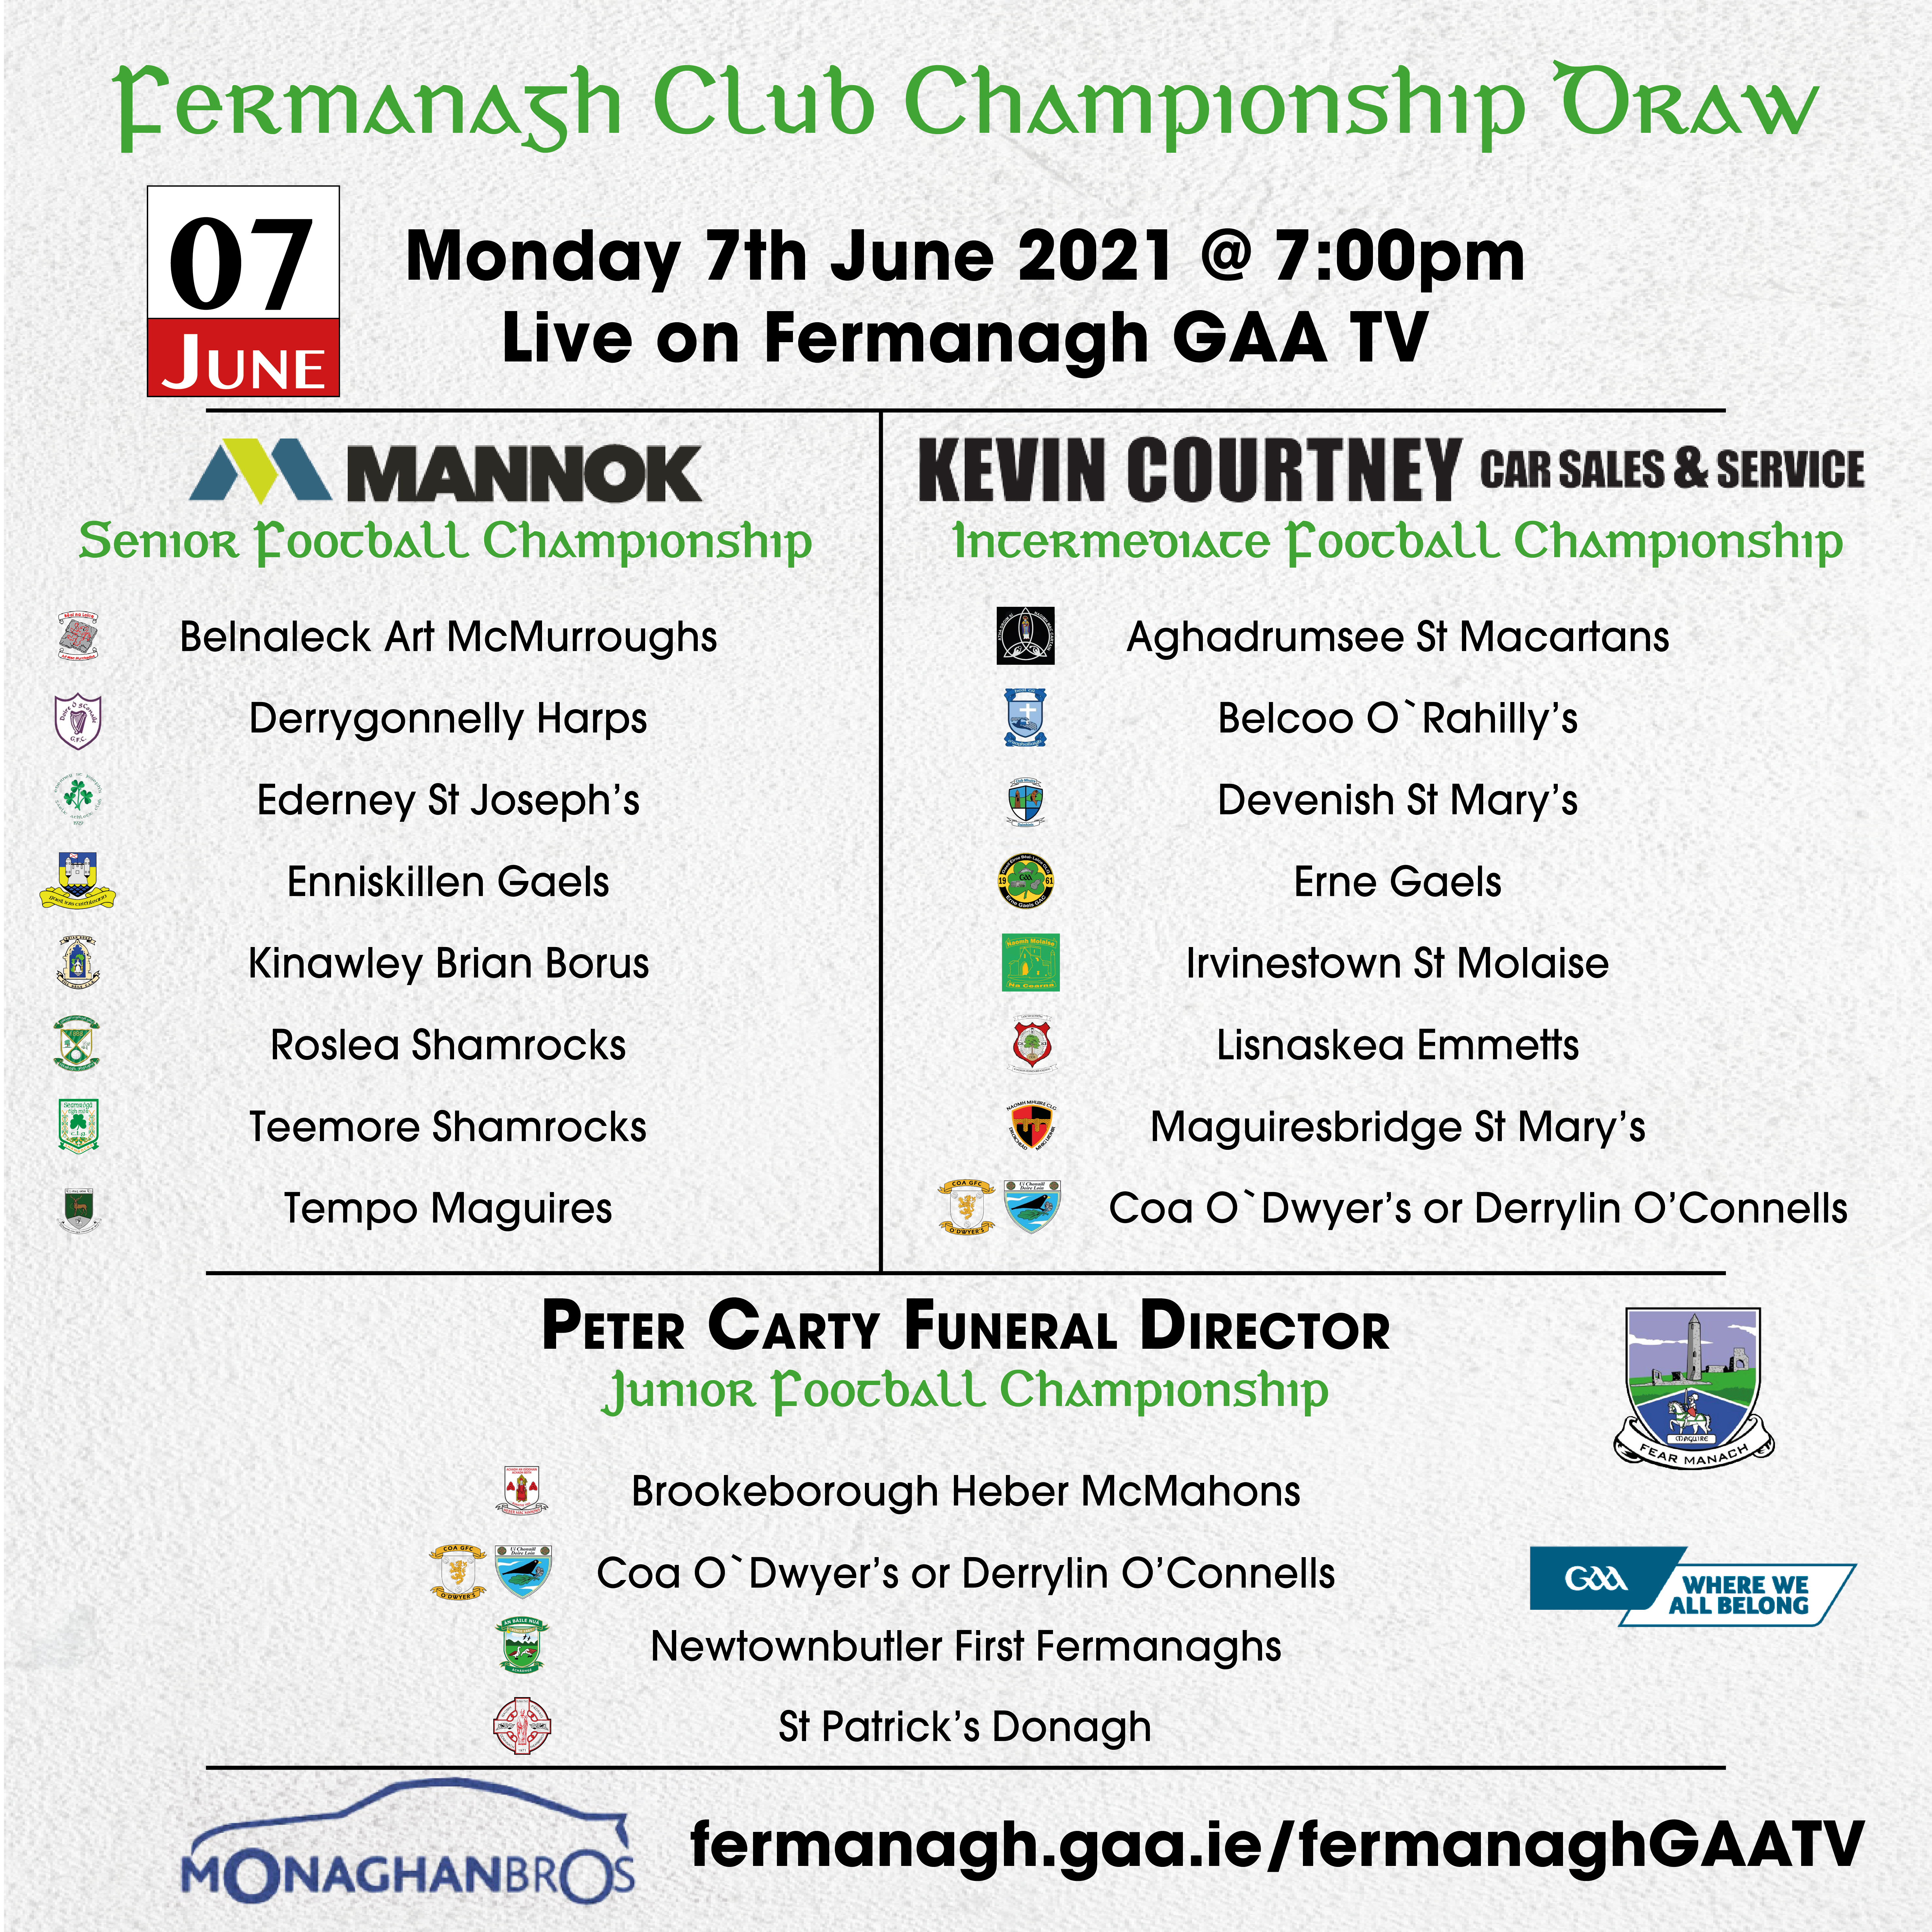 2021 Fermanagh Club Championships Draw